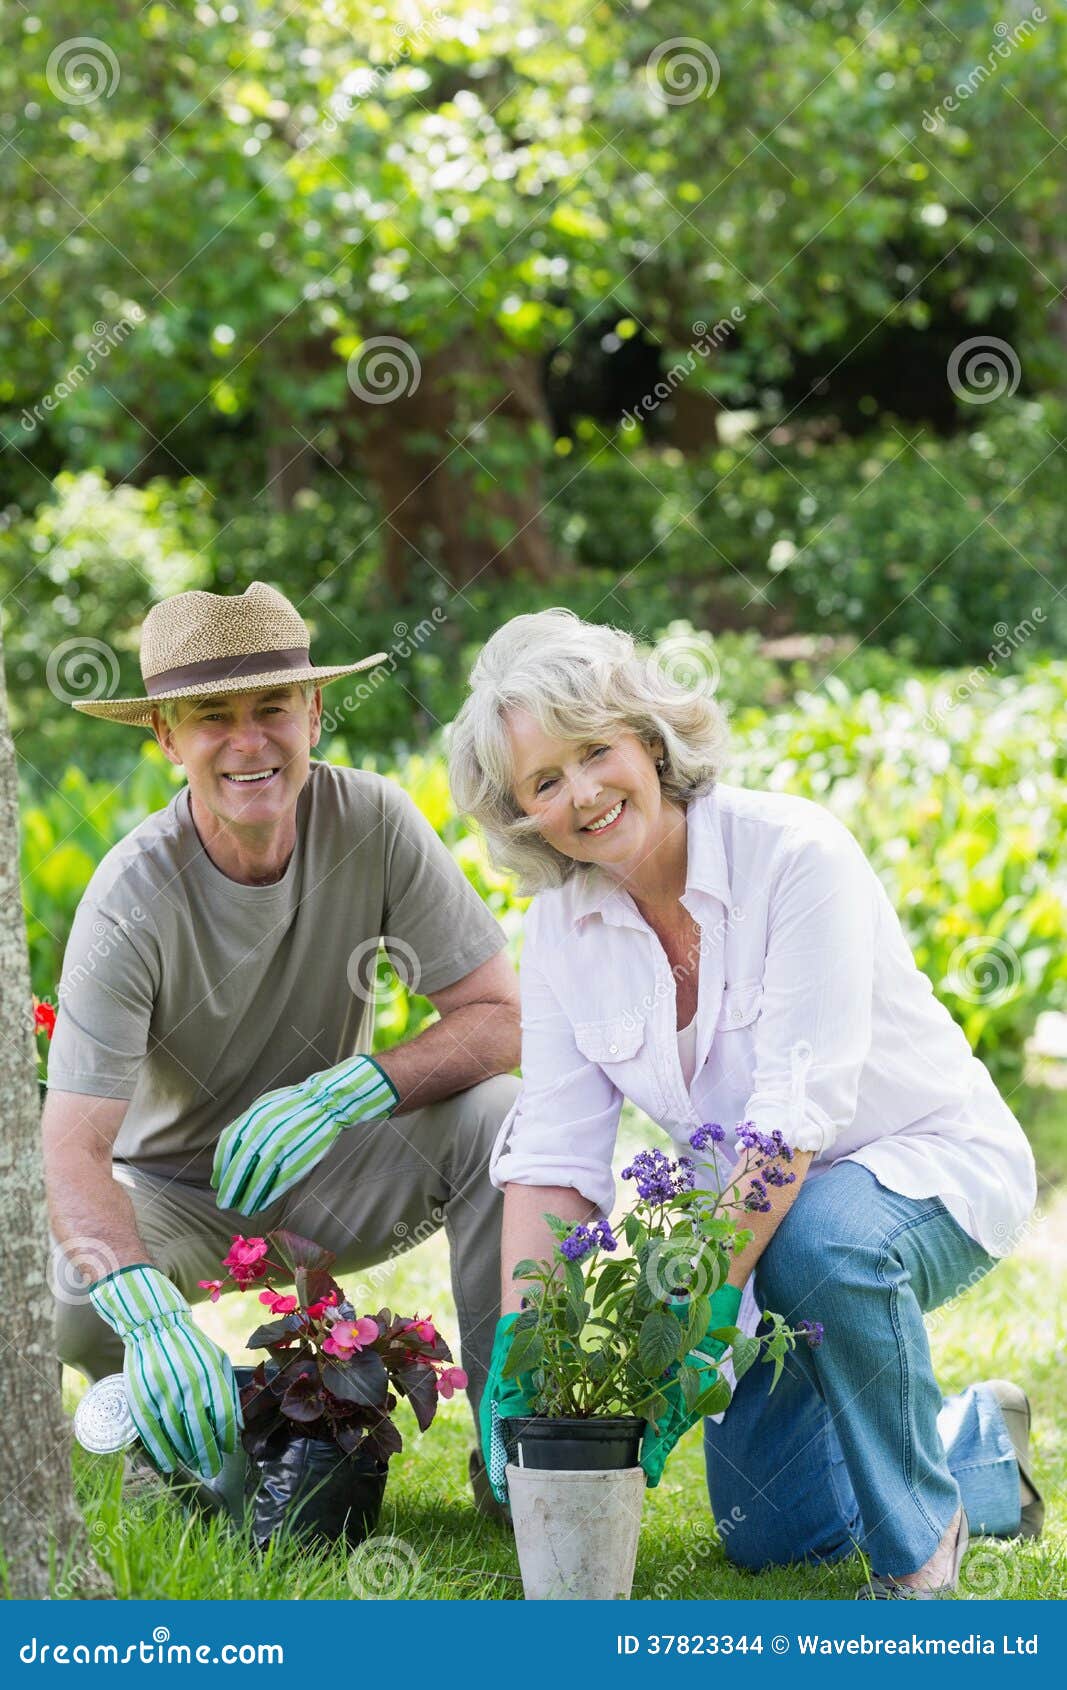 Smiling Couple Engaged in Gardening Stock Photo - Image of elderly ...